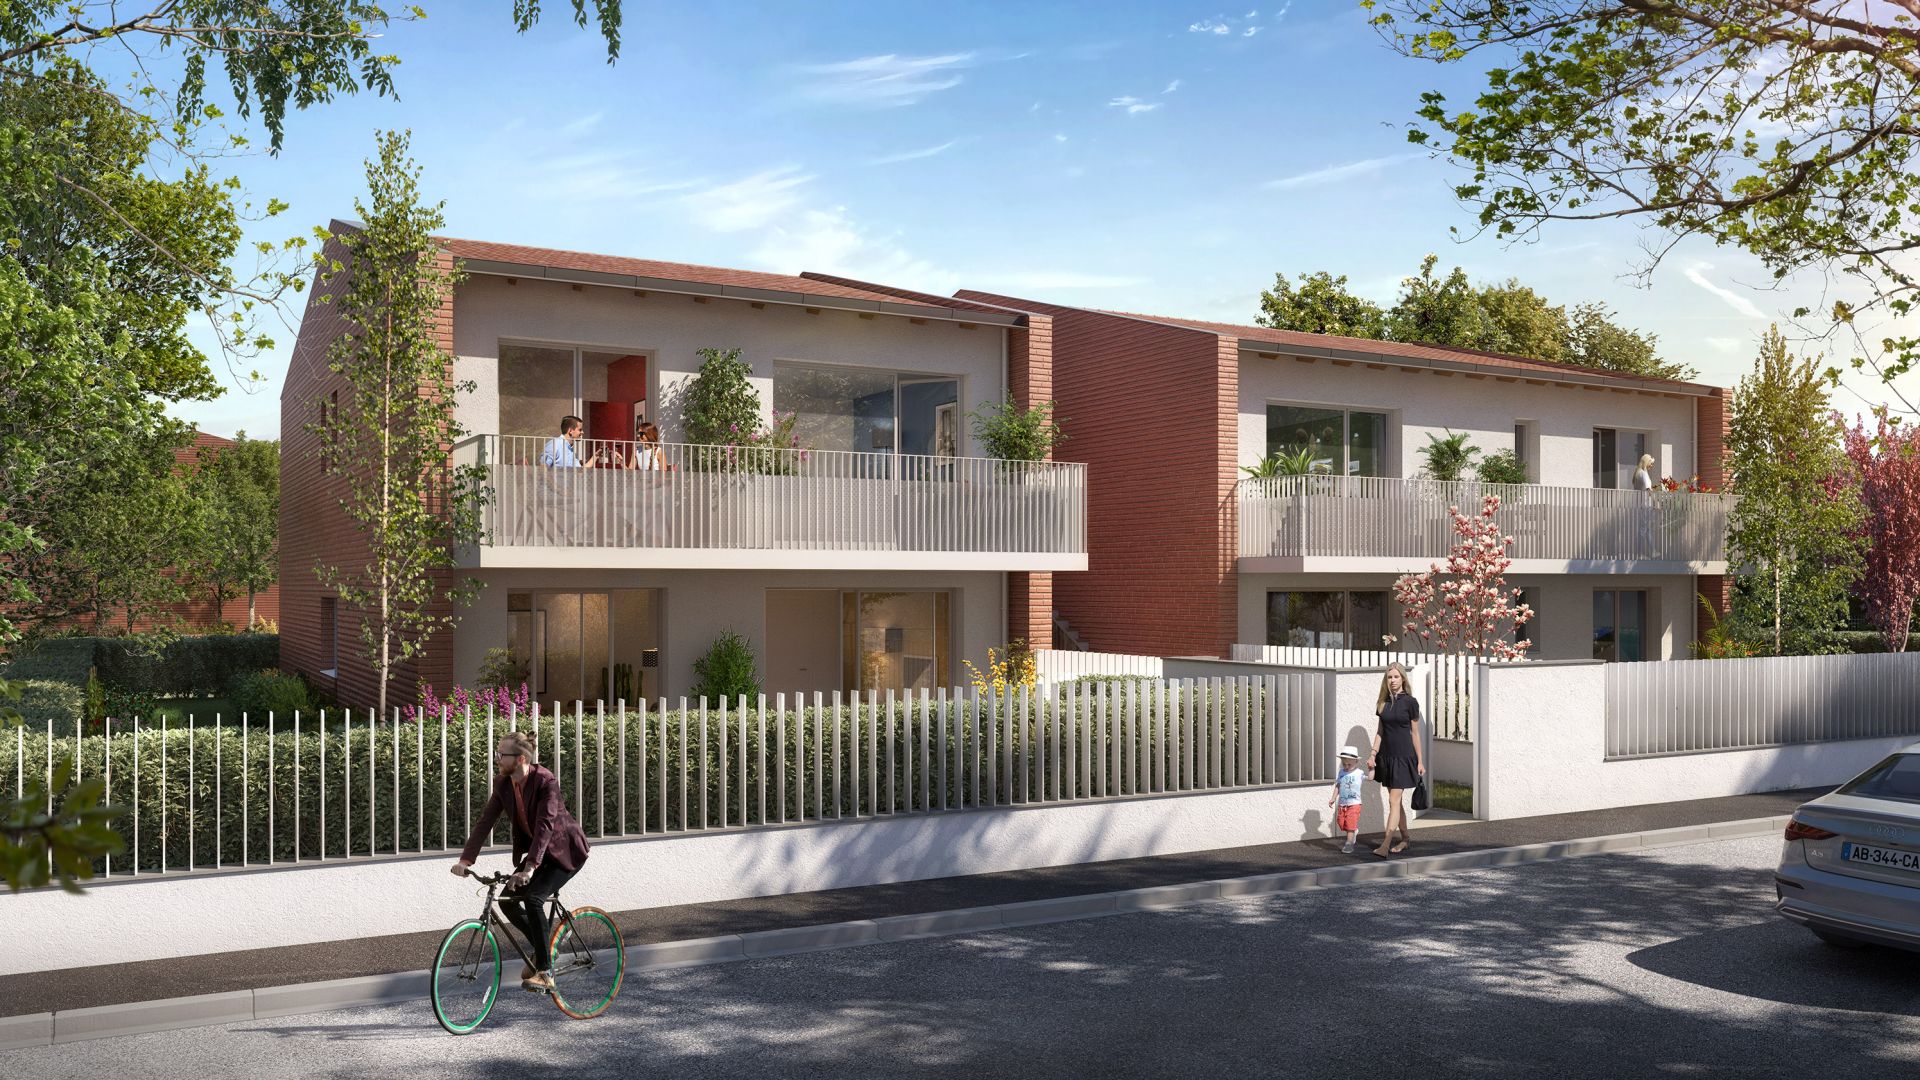 Greencity immobilier - achat immobilier neuf - appartements et villas du T2au T4 - Résidence Le Gardénia -31100 Toulouse Saint-Simon